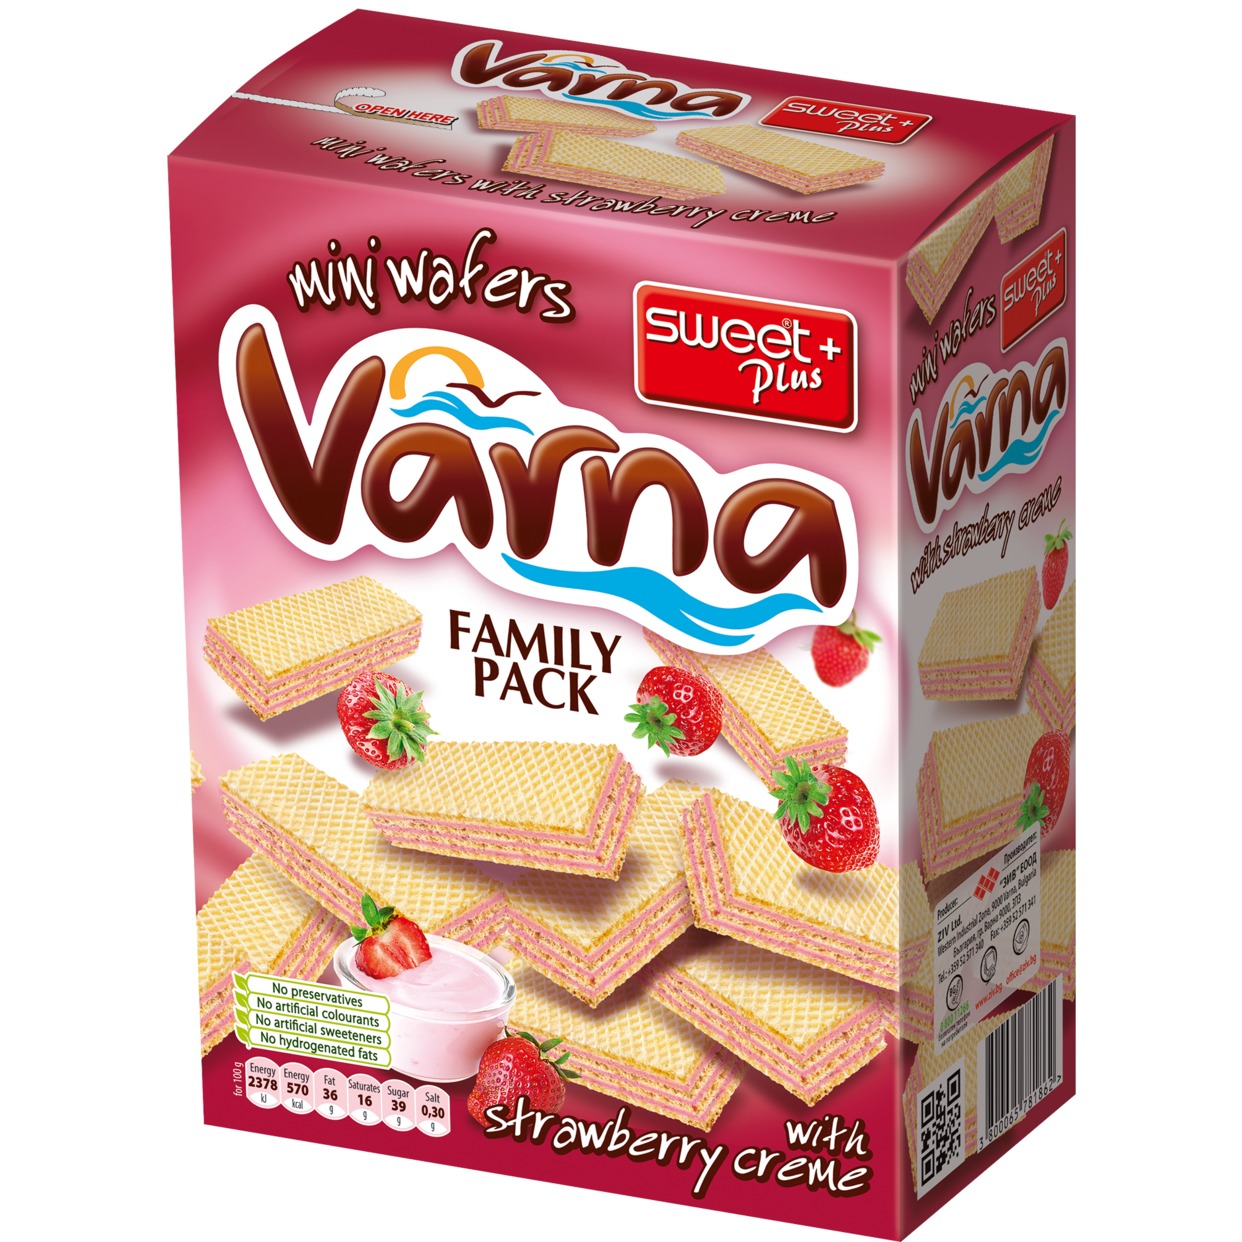 Вафли Sweet Plus Varna Мини с кремом с клубничным ароматом 200 г по акции в Пятерочке